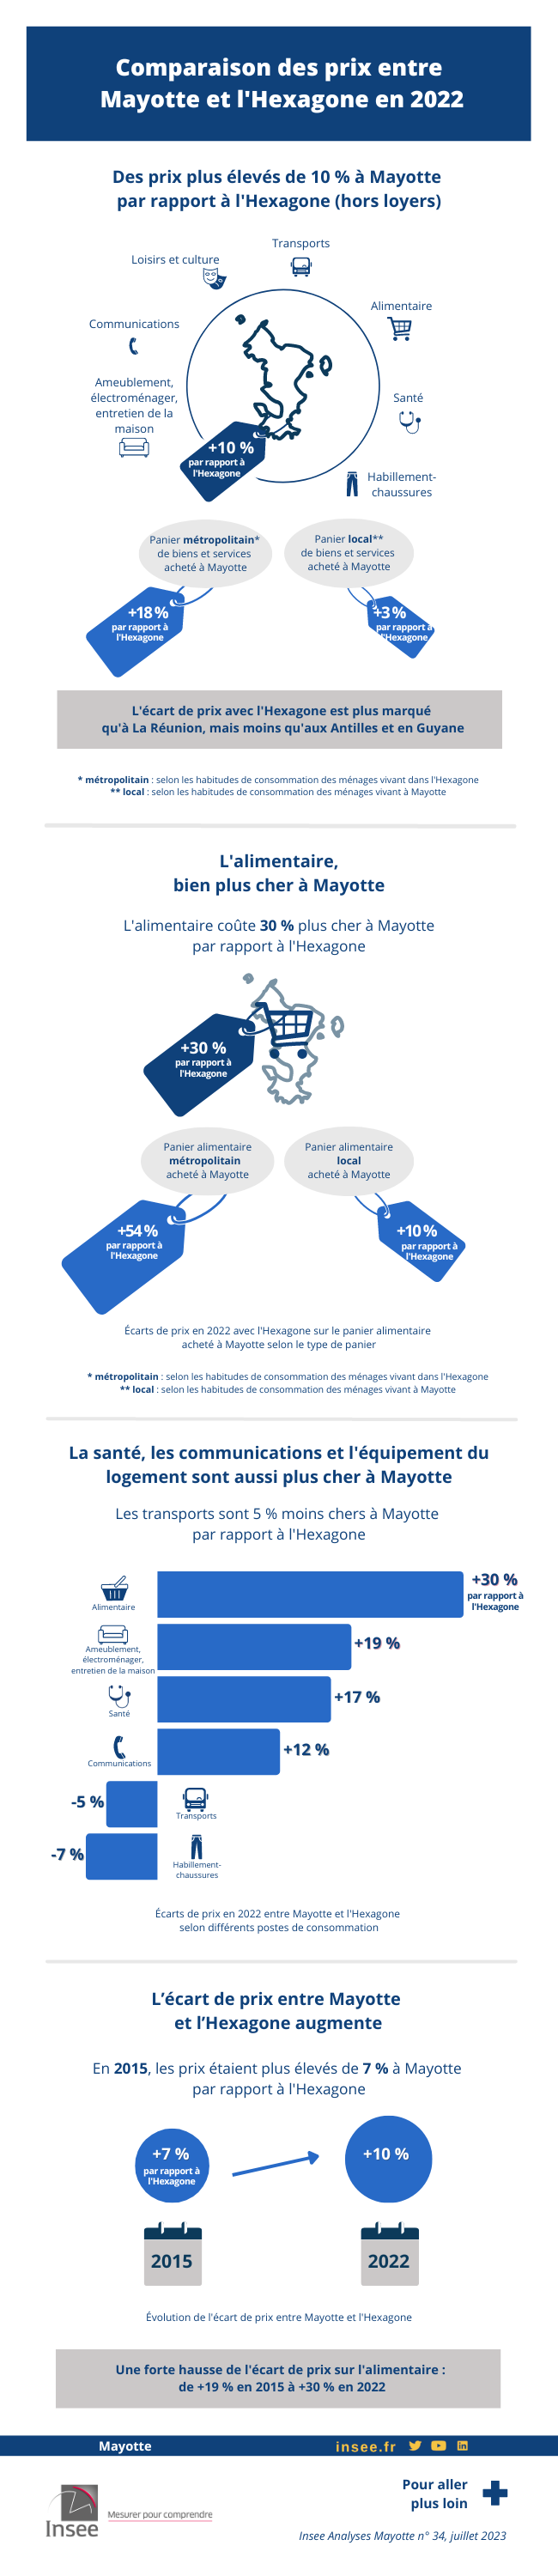 Comparaison des prix de Mayotte avec la France métropolitaine en 2022